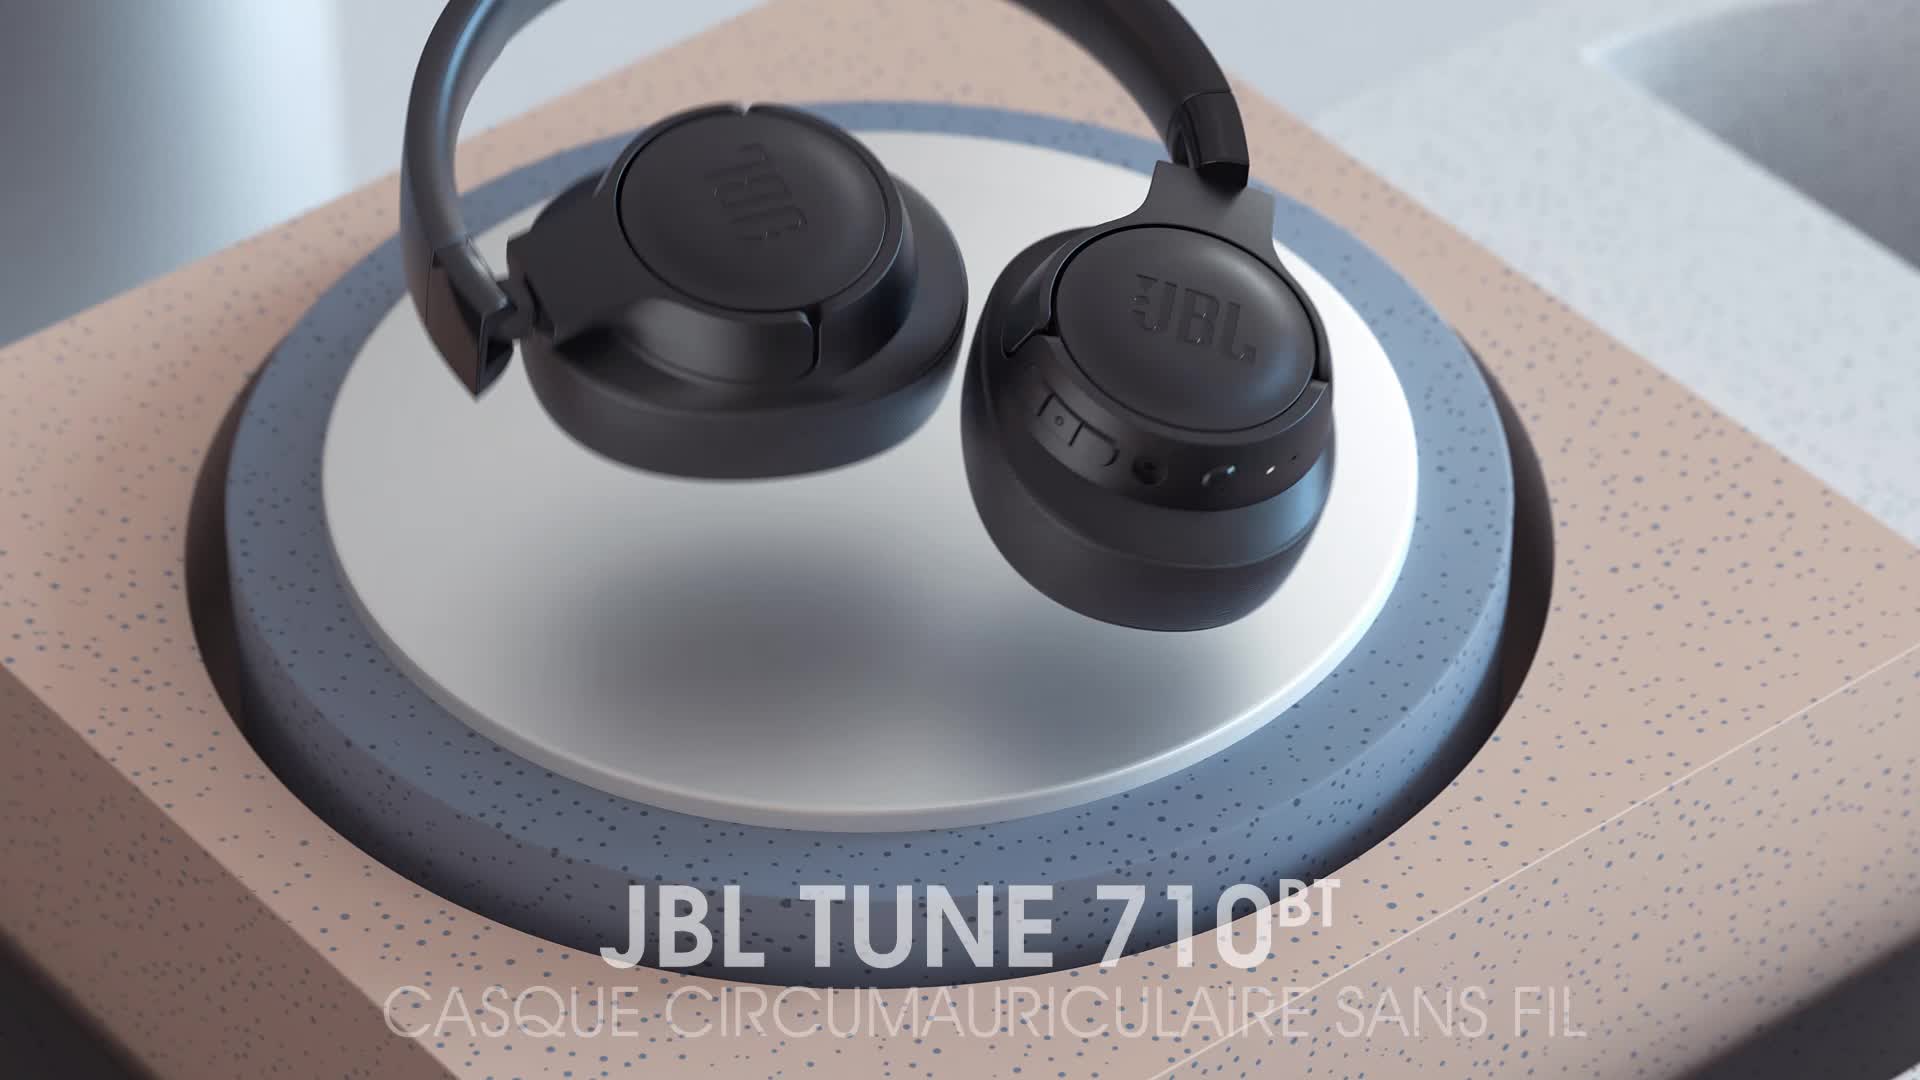 Casque wireless avec micro Jbl Tune 570BT - Noir idée cadeau fin d année